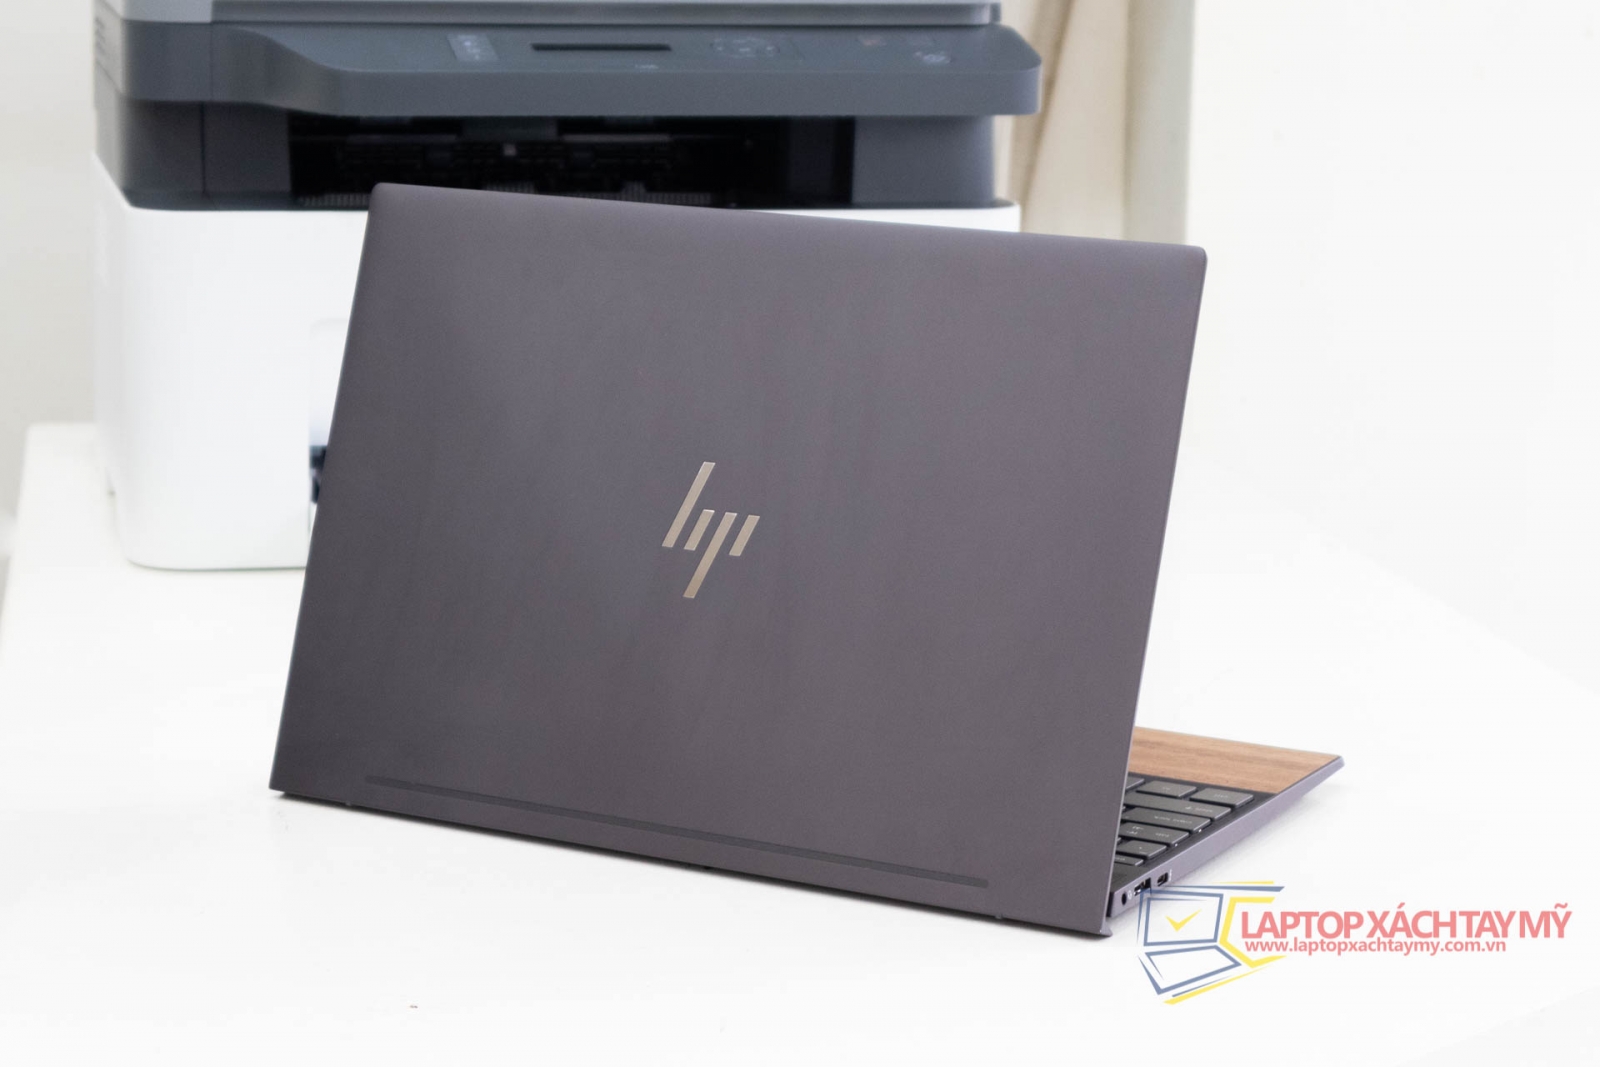 Laptop cũ tp HCM HP Envy 13 - I7 1065G7, Ram 8G, SSD 512G, 13.3 In Full HD